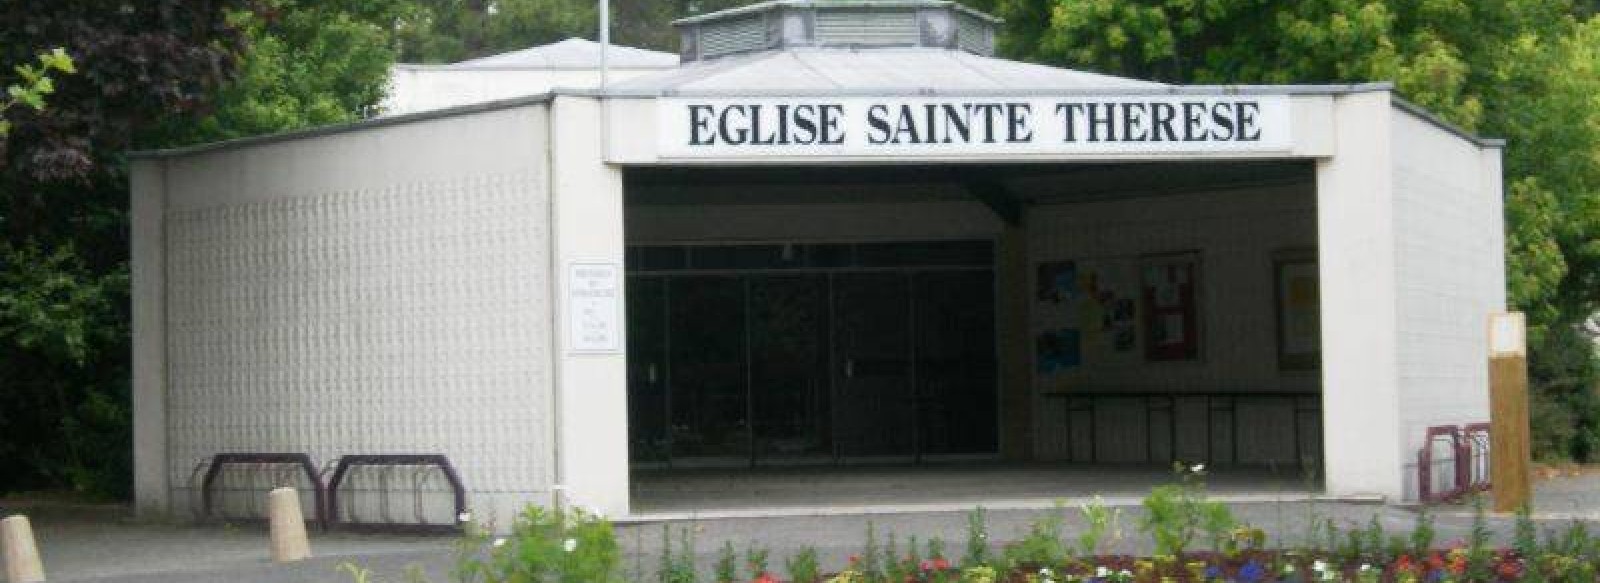 Eglise Sainte-Therese